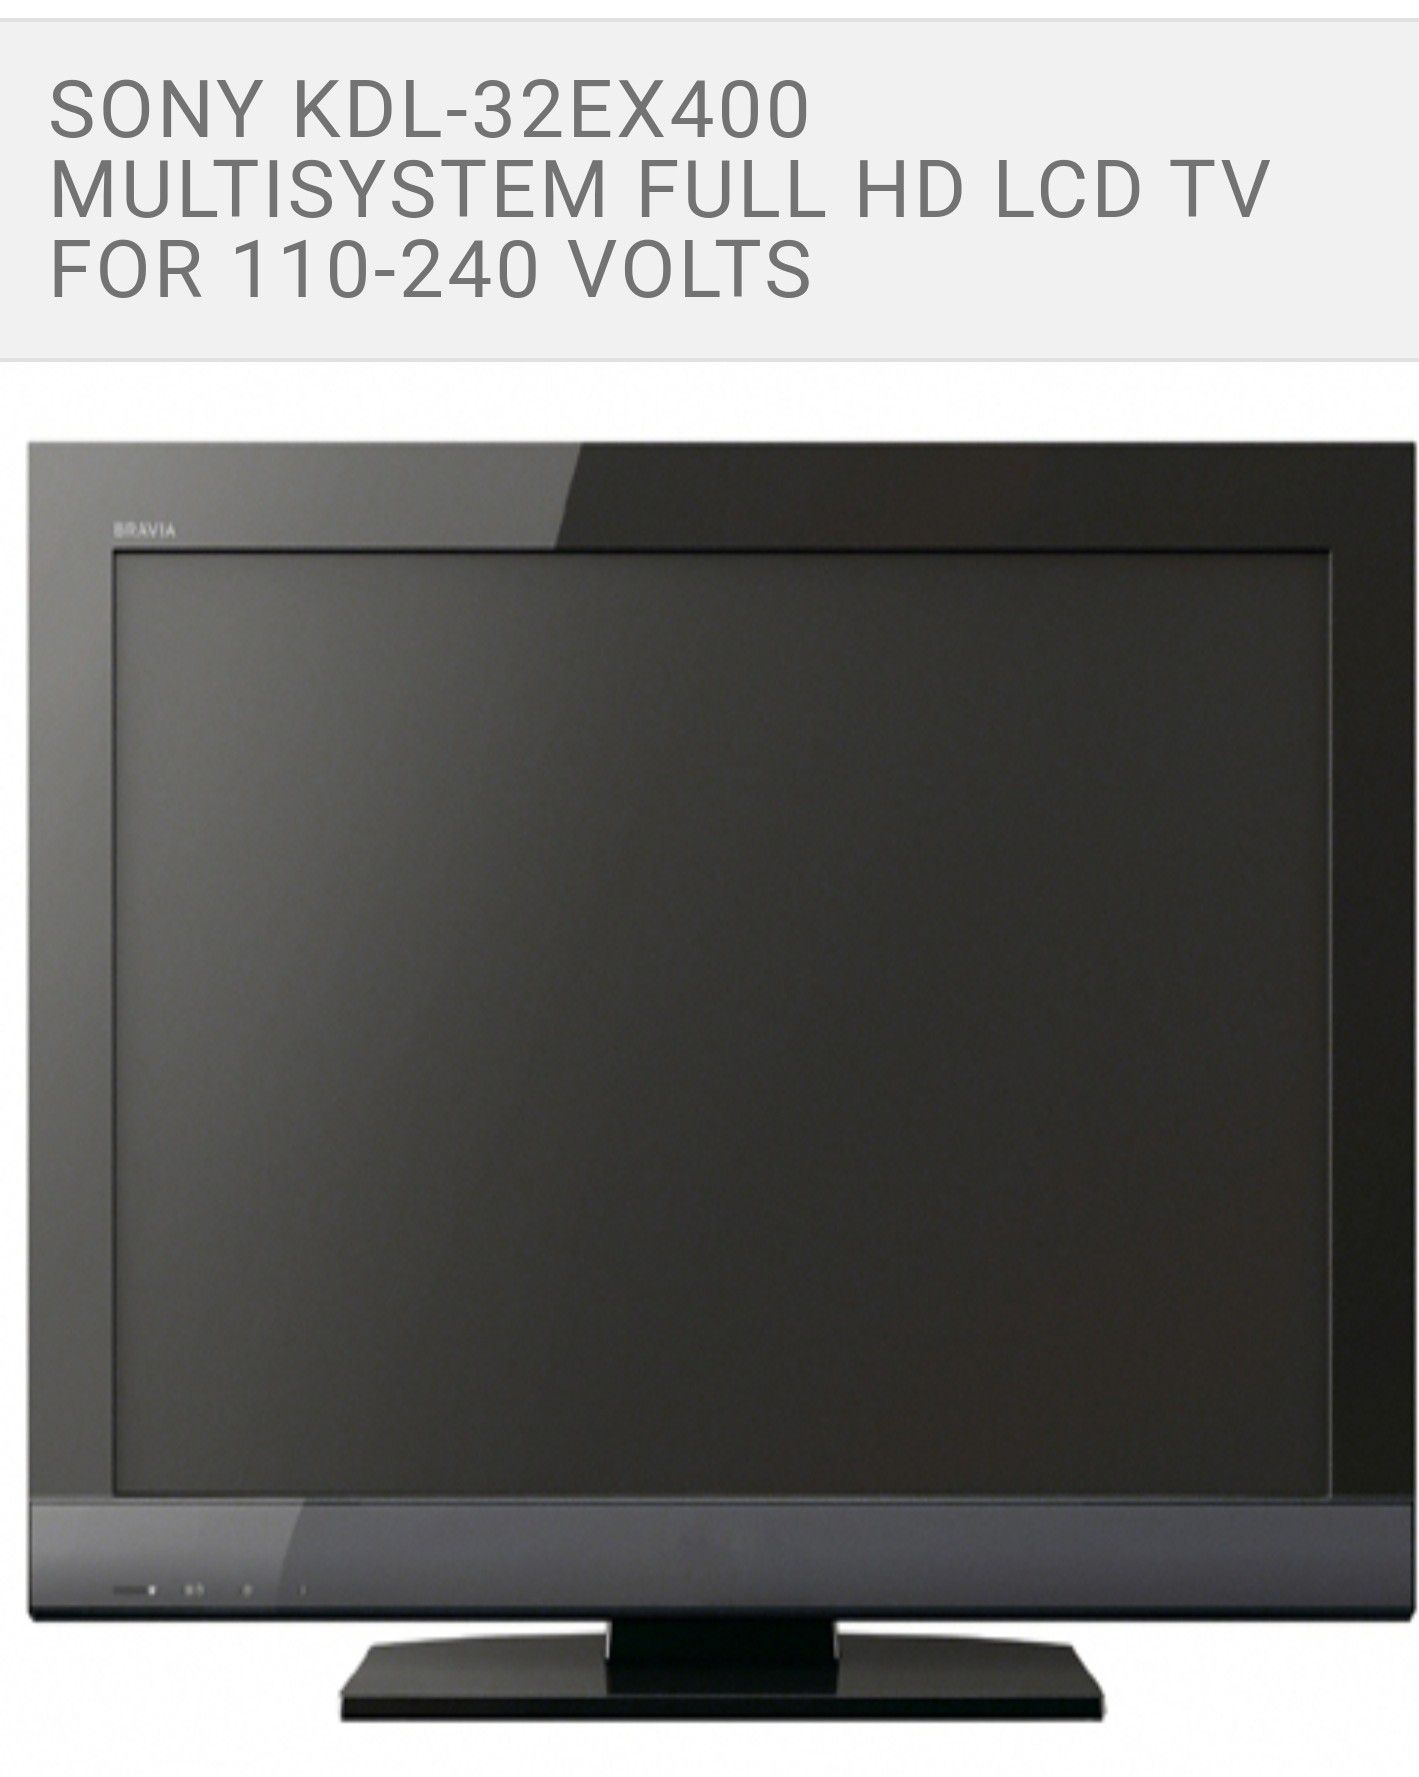 Flat screen Sony 32" TV